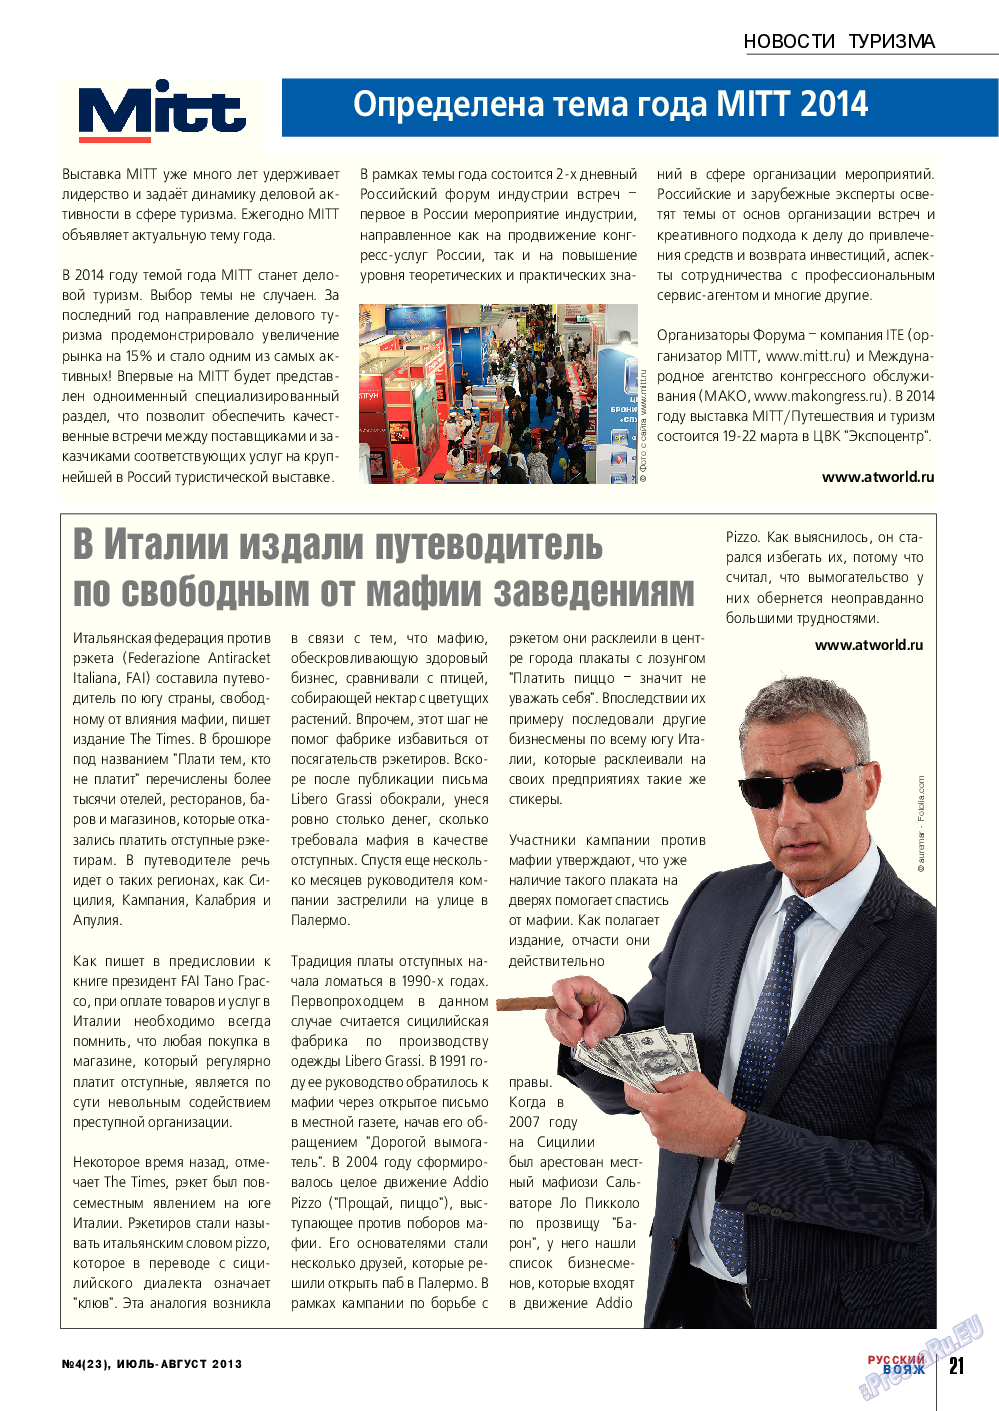 Русский вояж (журнал). 2013 год, номер 23, стр. 21